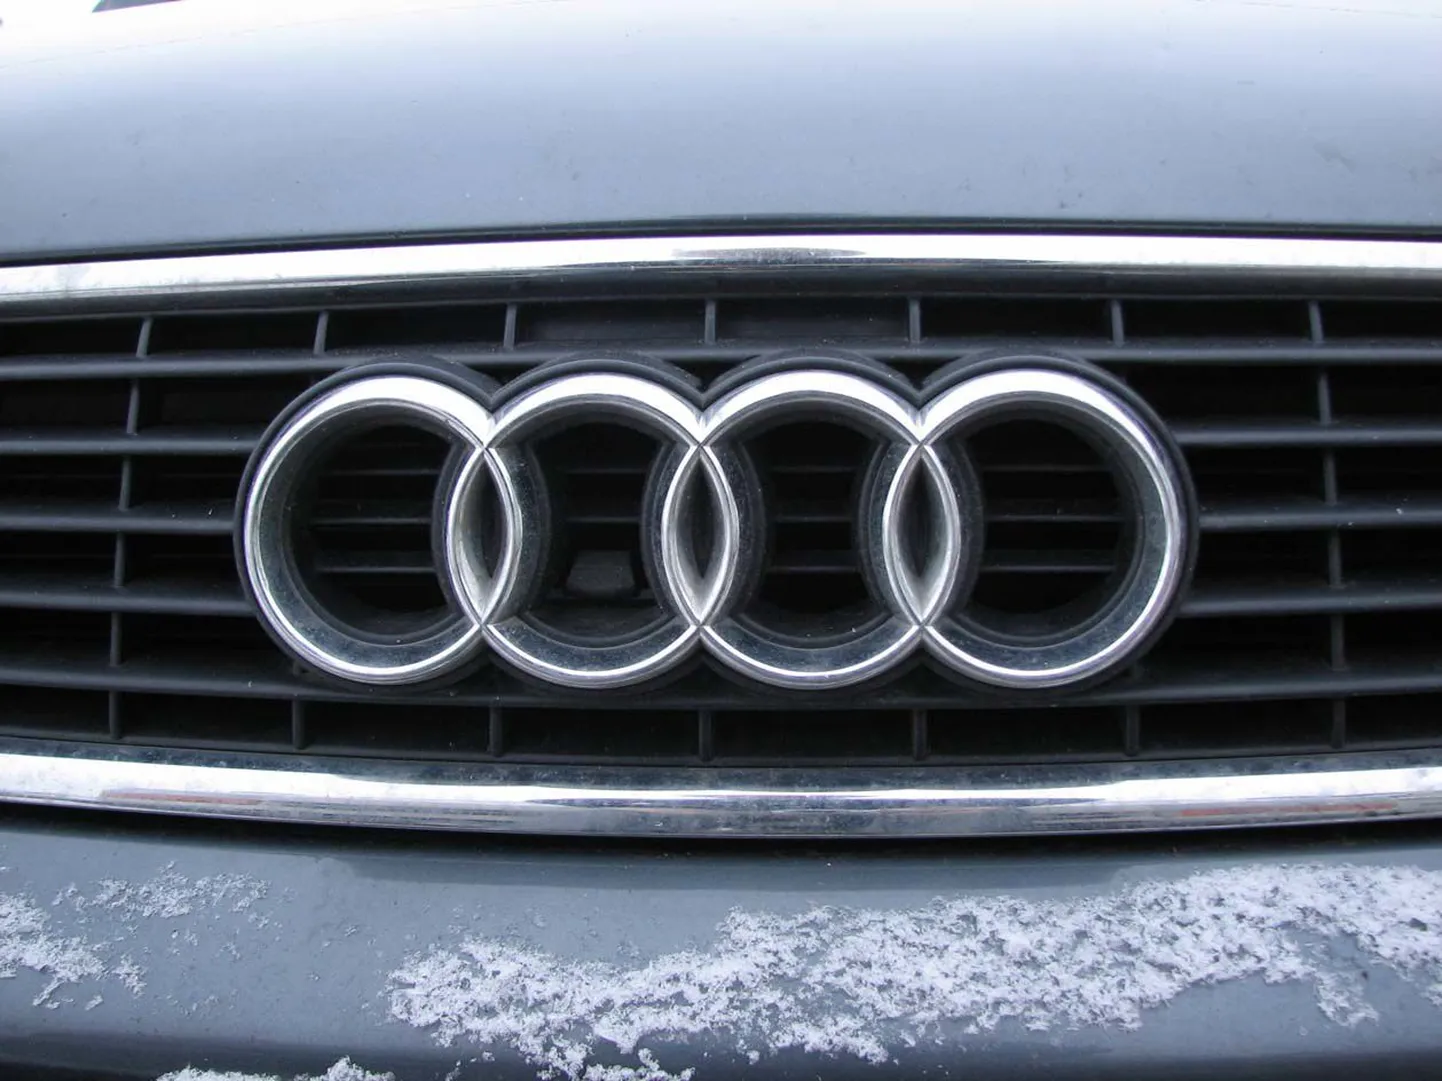 Sõiduauto Audi peeti kinni kahe kilomeetri kaugusel ajutisest kontrolljoonest. Pilt on illustreeriv.